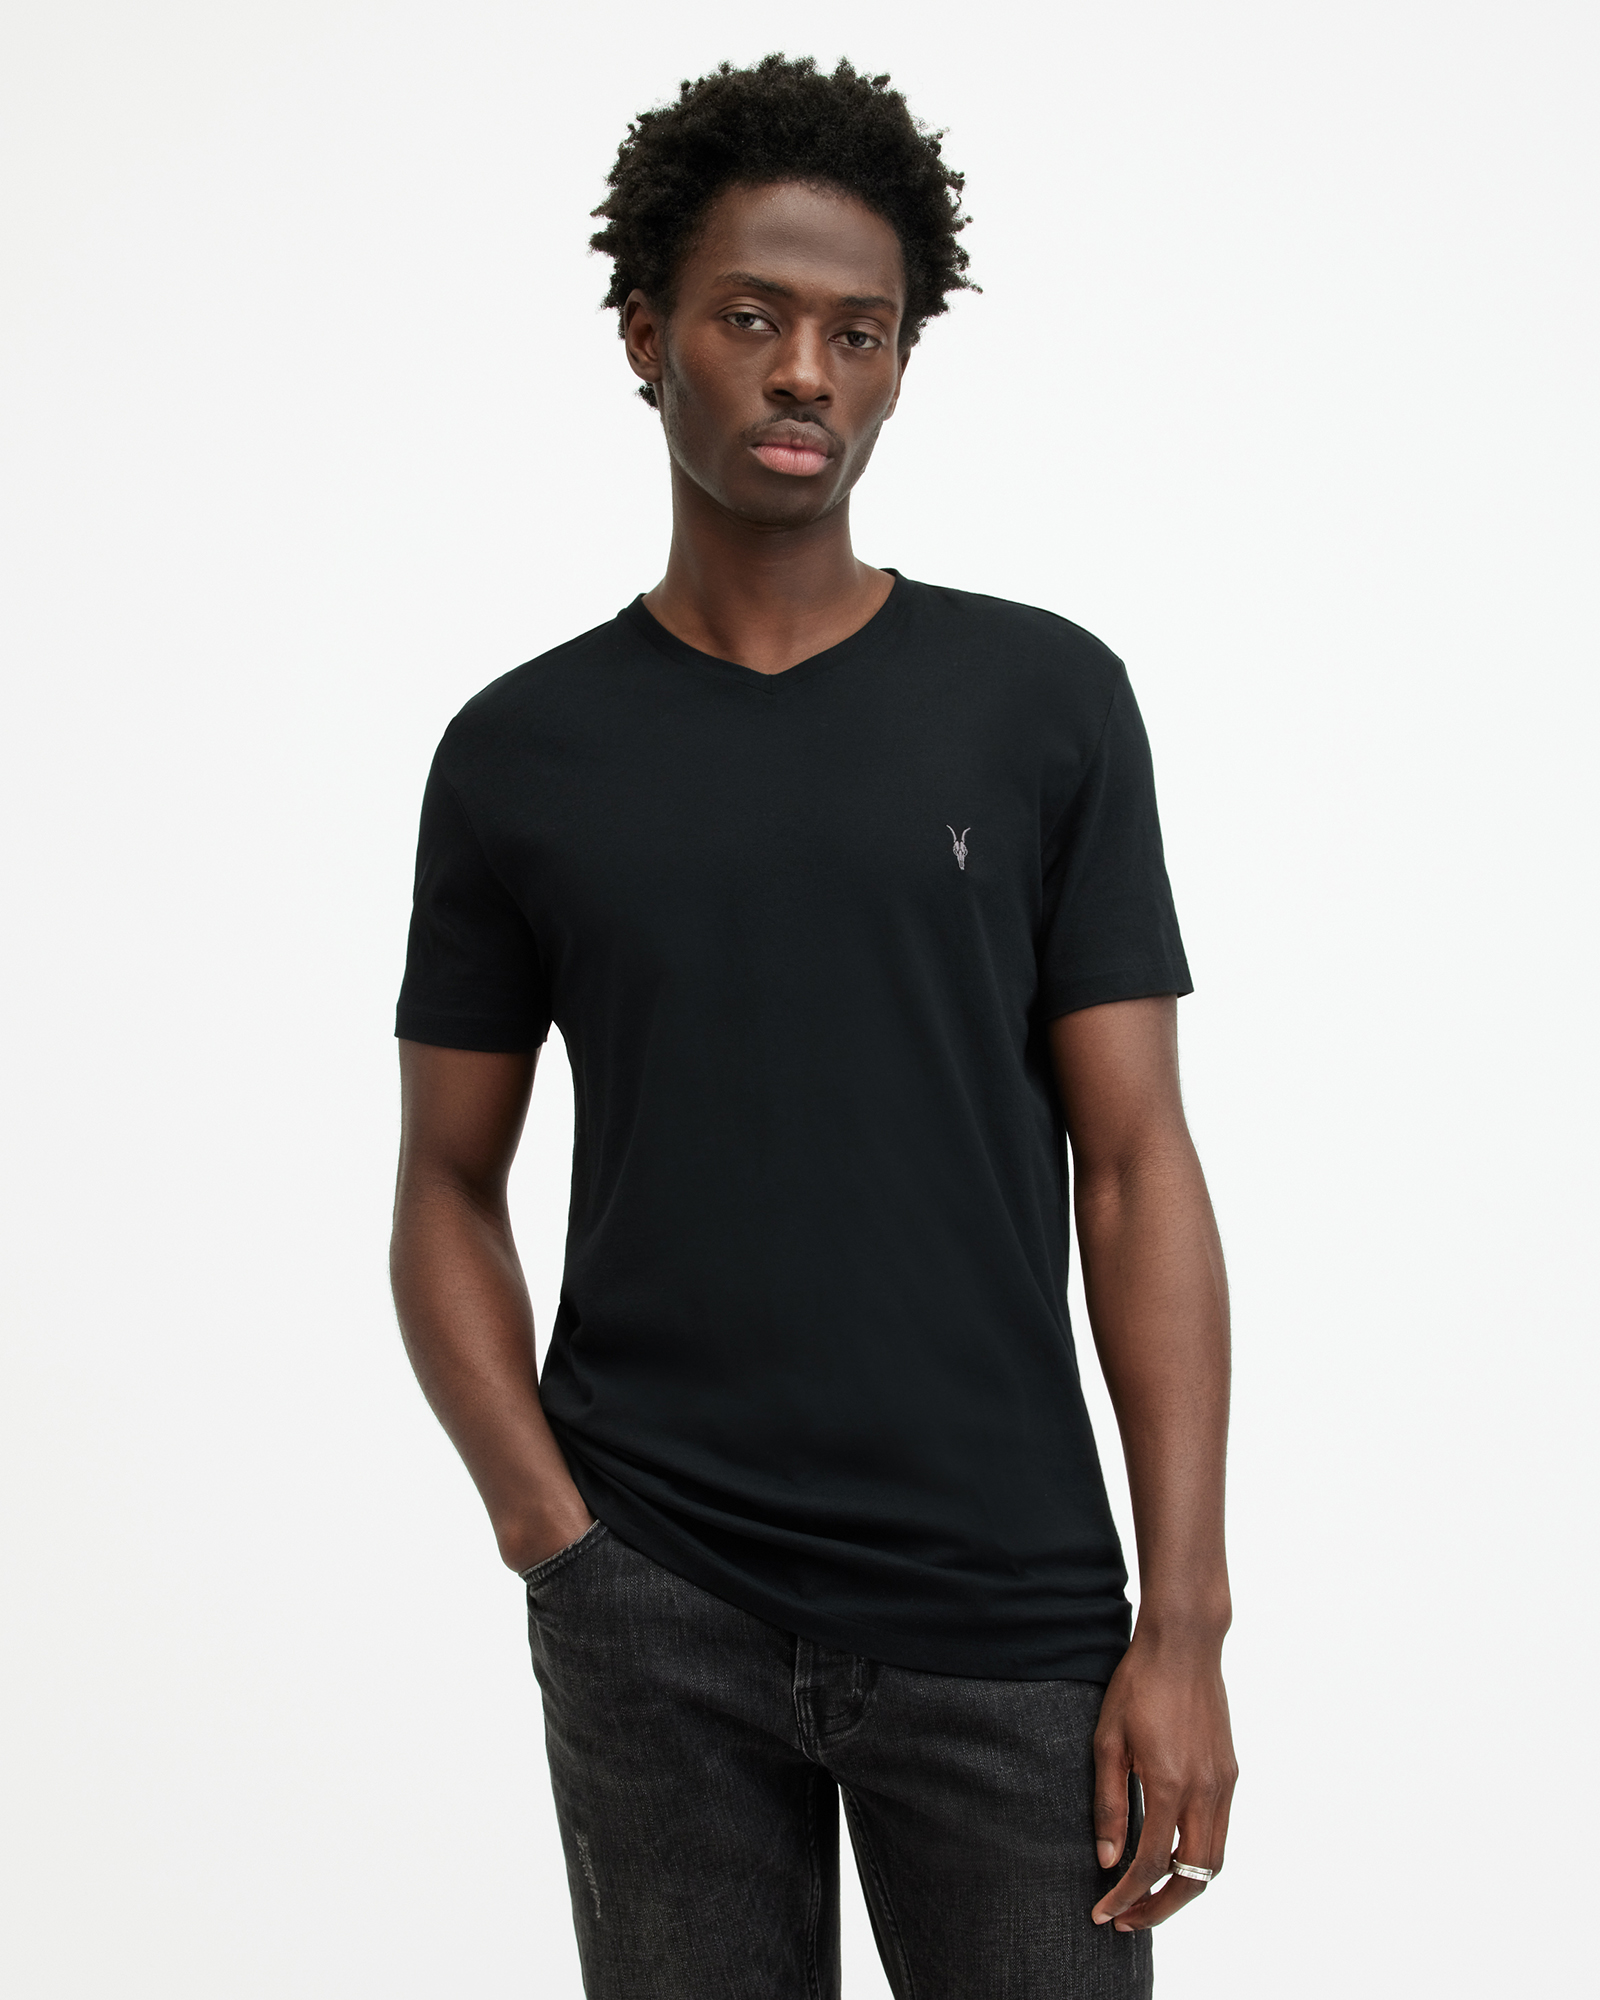 AllSaints Tonic V-Neck Slim Fit Ramskull T-Shirt,, Jet Black